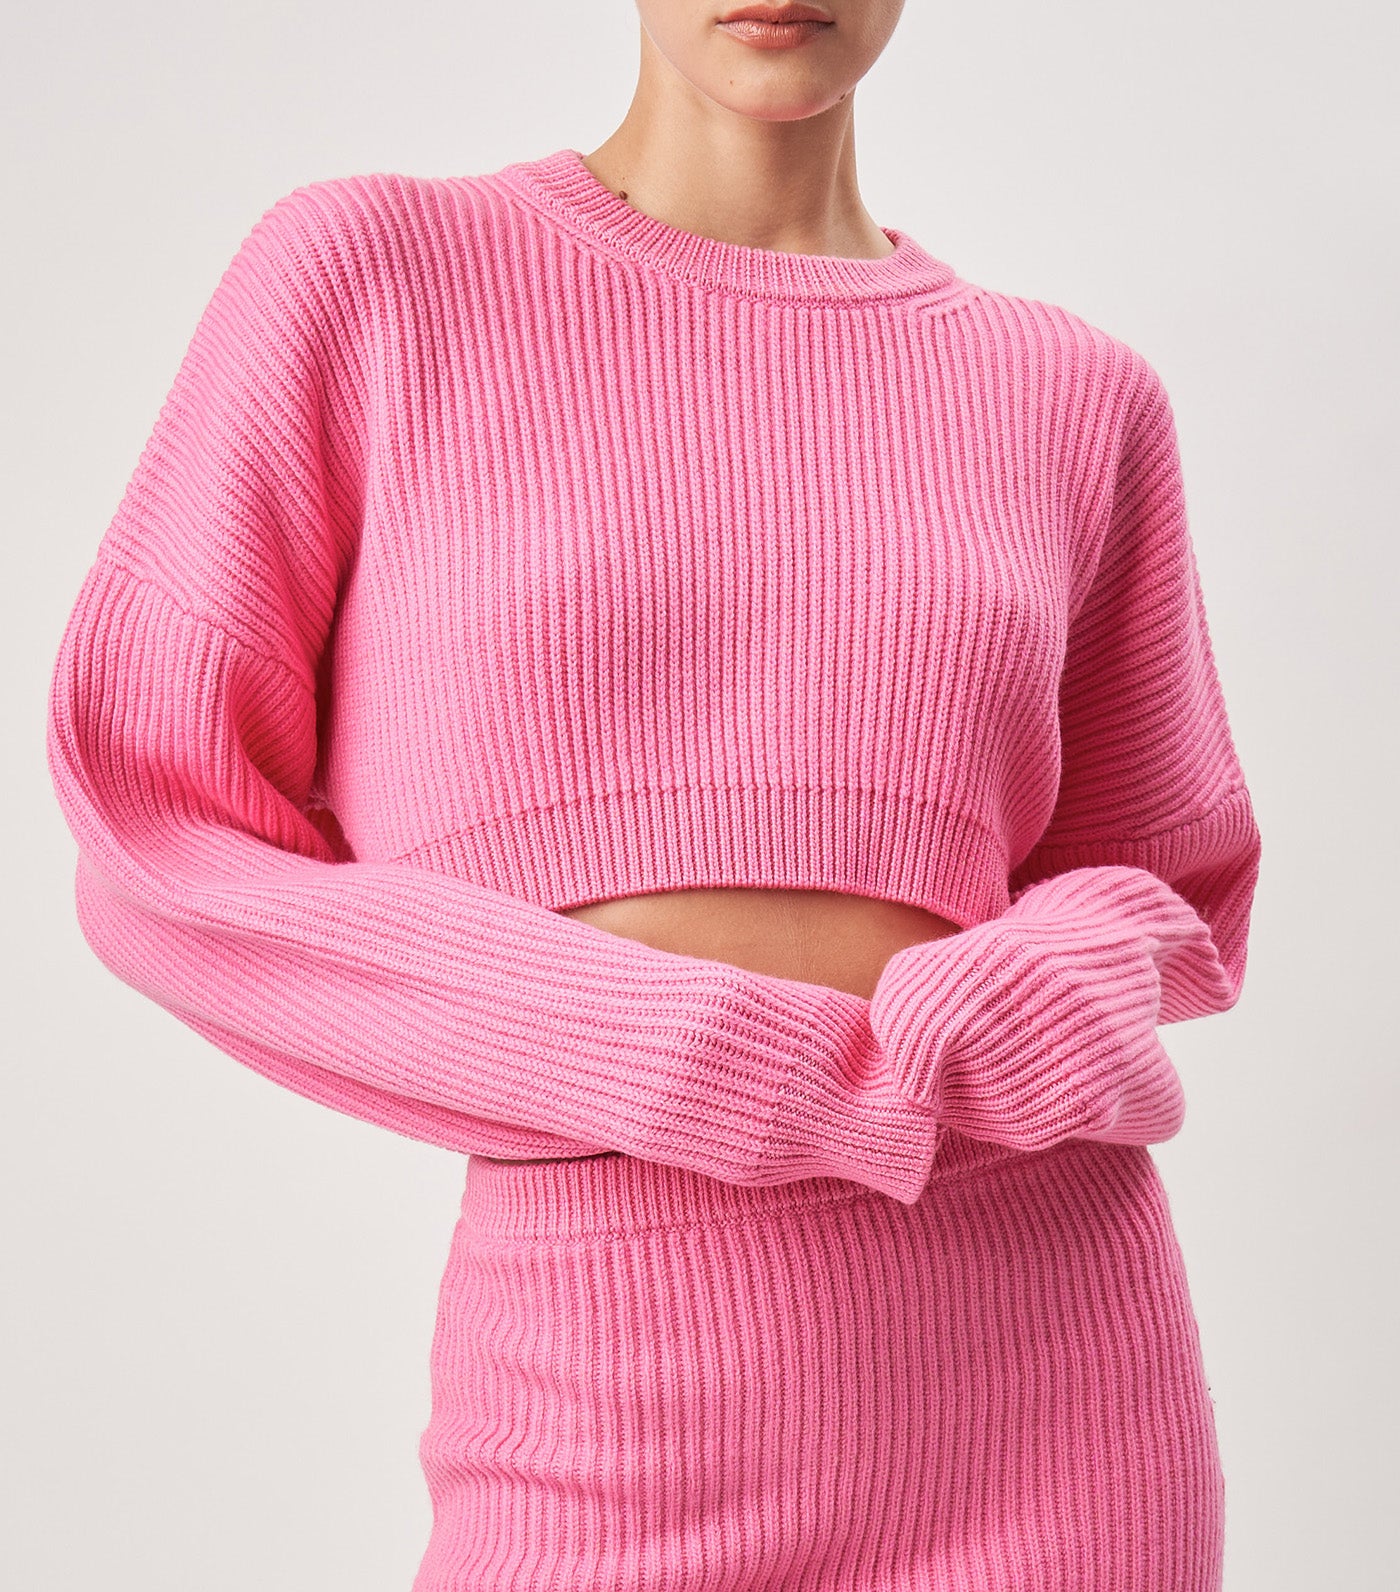 Violet Knit Top Hot Pink